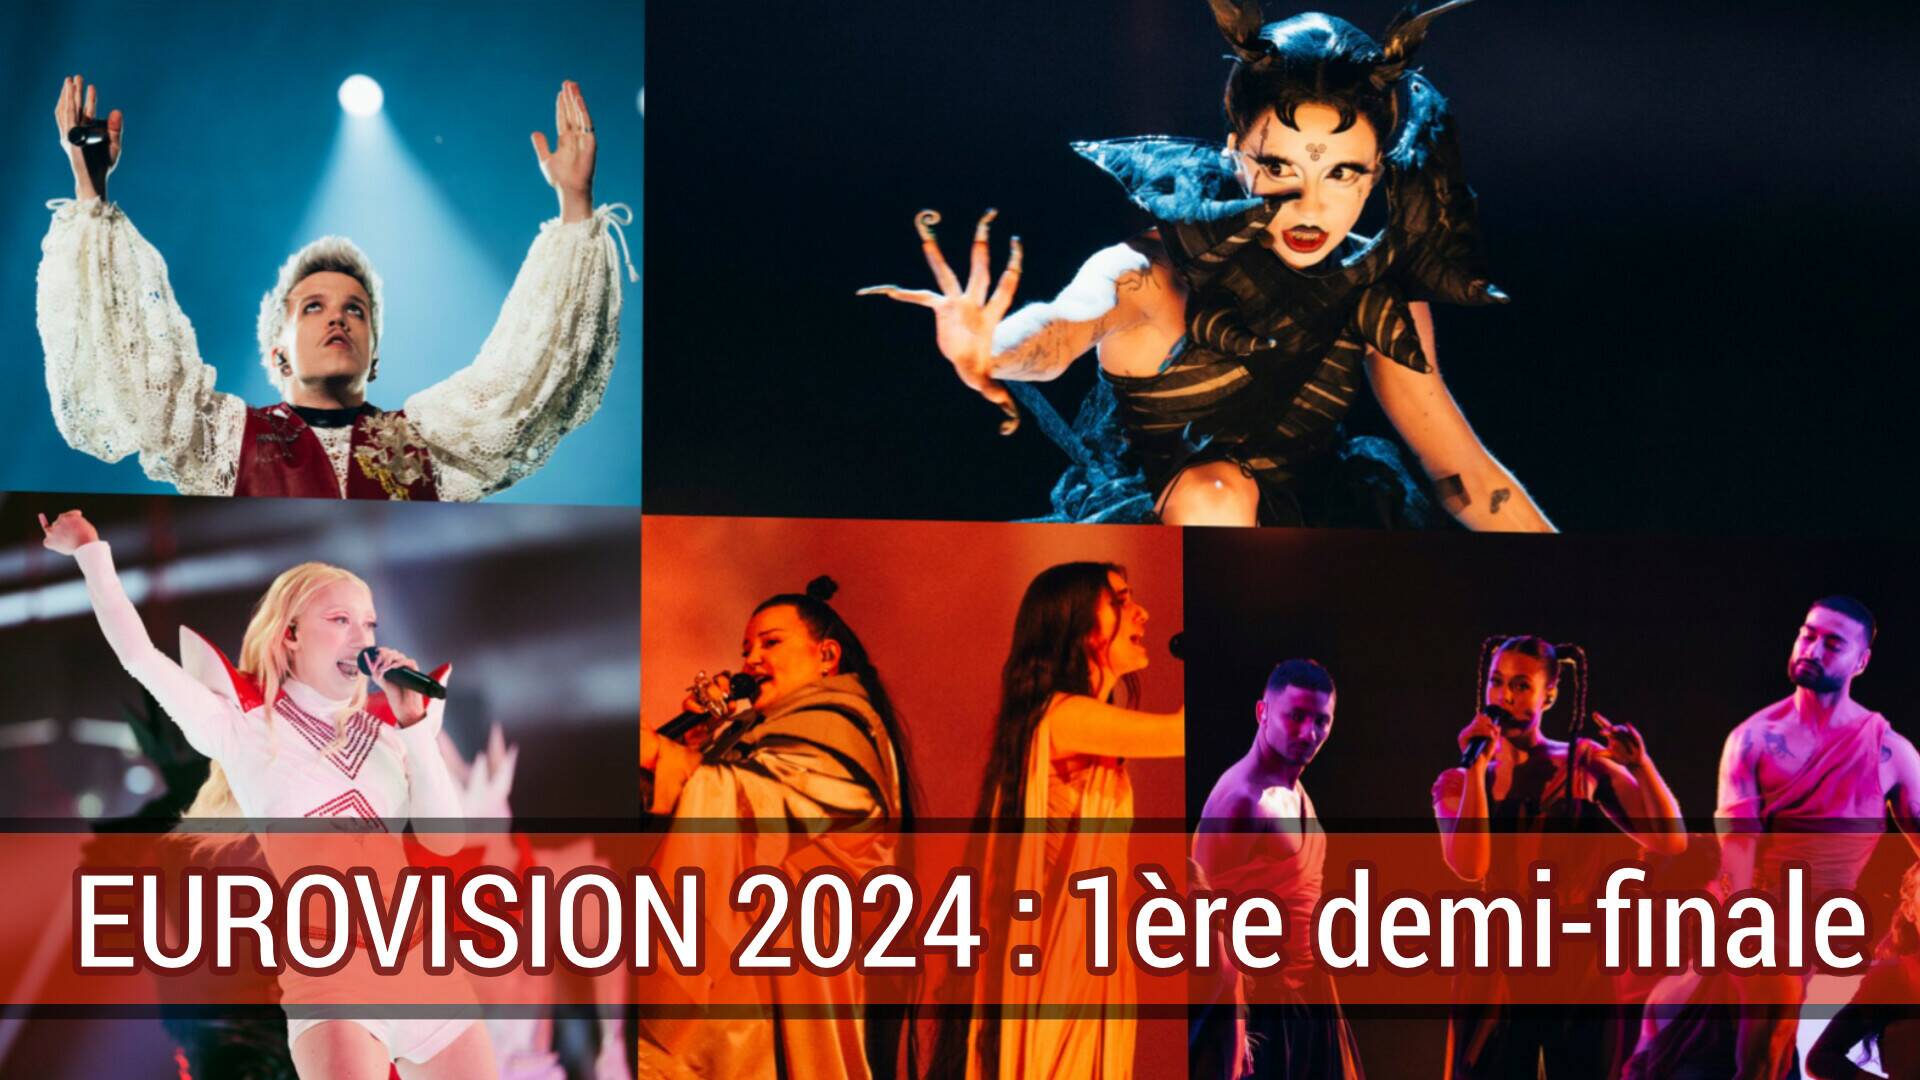 Eurovision 2024 : La 1ère demi-finale